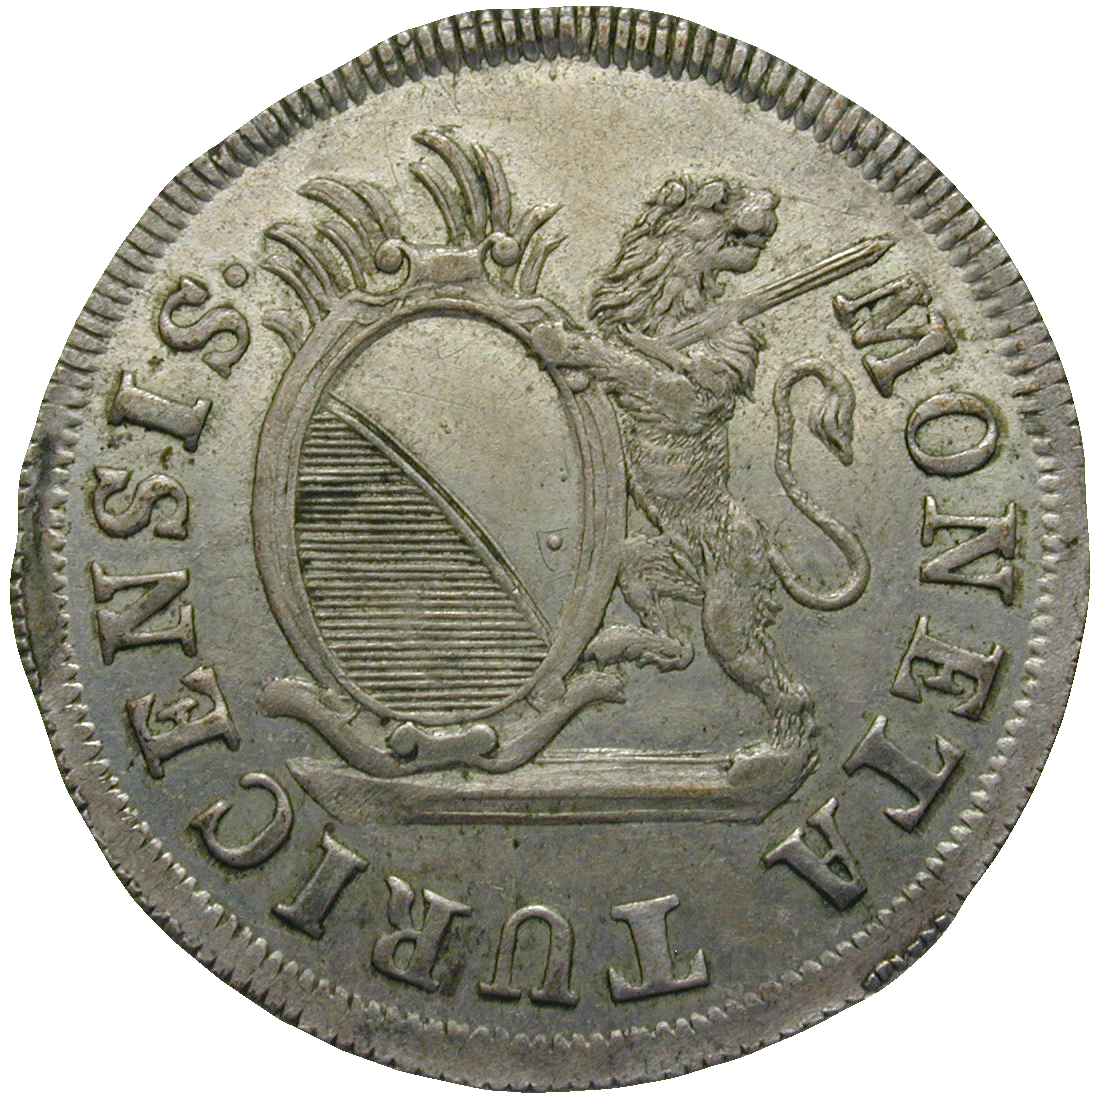 Republic of Zurich, 5 Schillings 1784 (obverse)